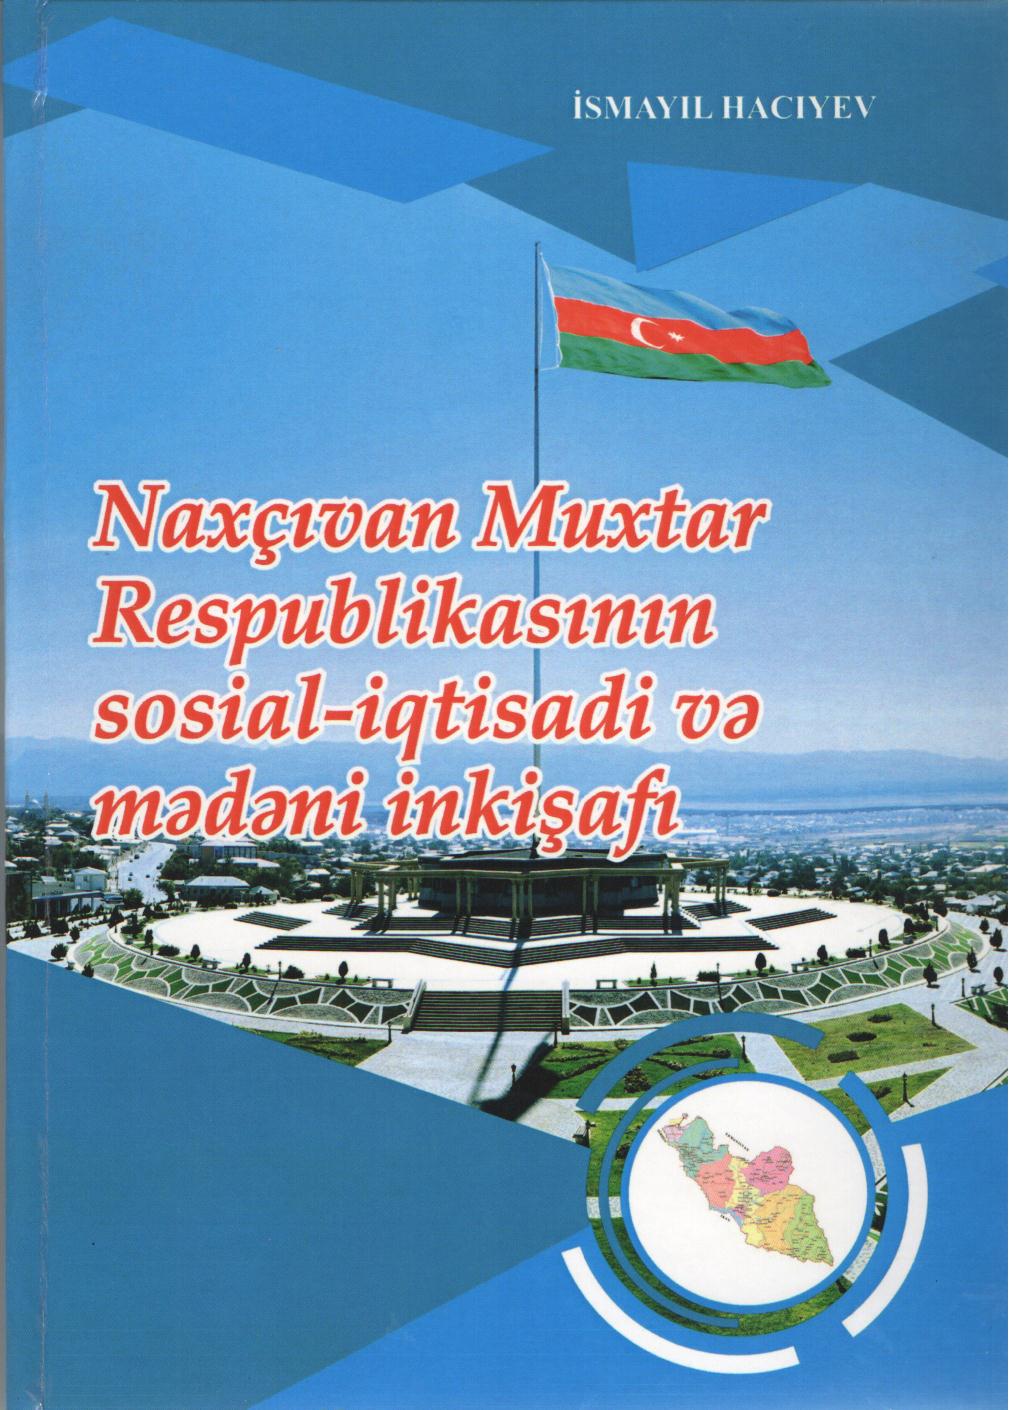 Издана монография, посвященная 95-летию Нахчыванской Автономной Республики